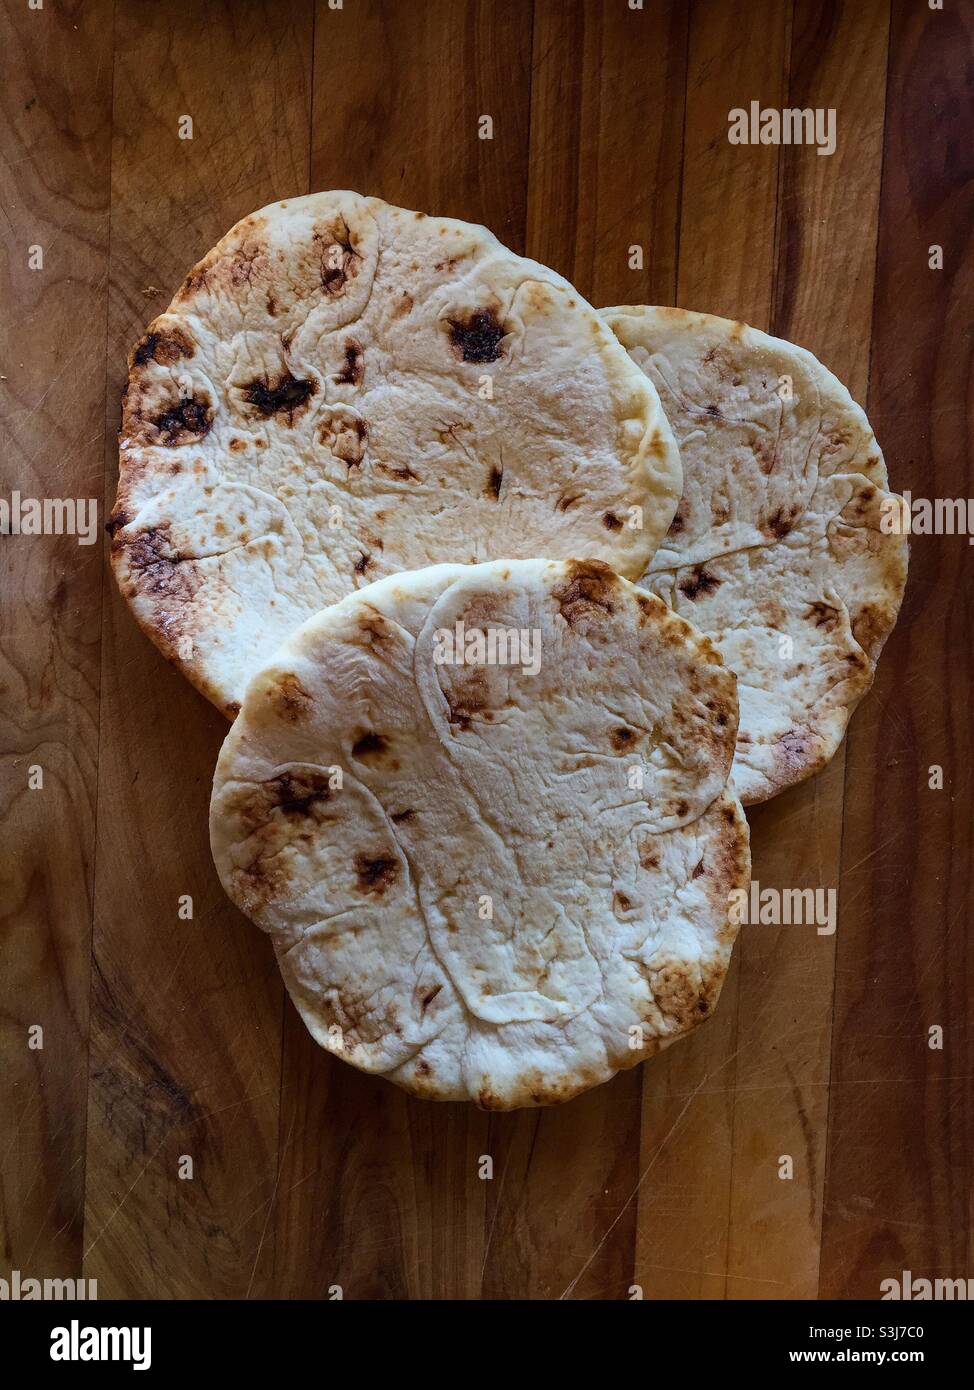 Tres deliciosos Naans en un bloque de madera. Panes de pan plano congelados dispuestos como un trío de círculos que se entrecruzan. El naan es el pan básico en el medio oriente y la India. Muchas variedades y estilos. Foto de stock